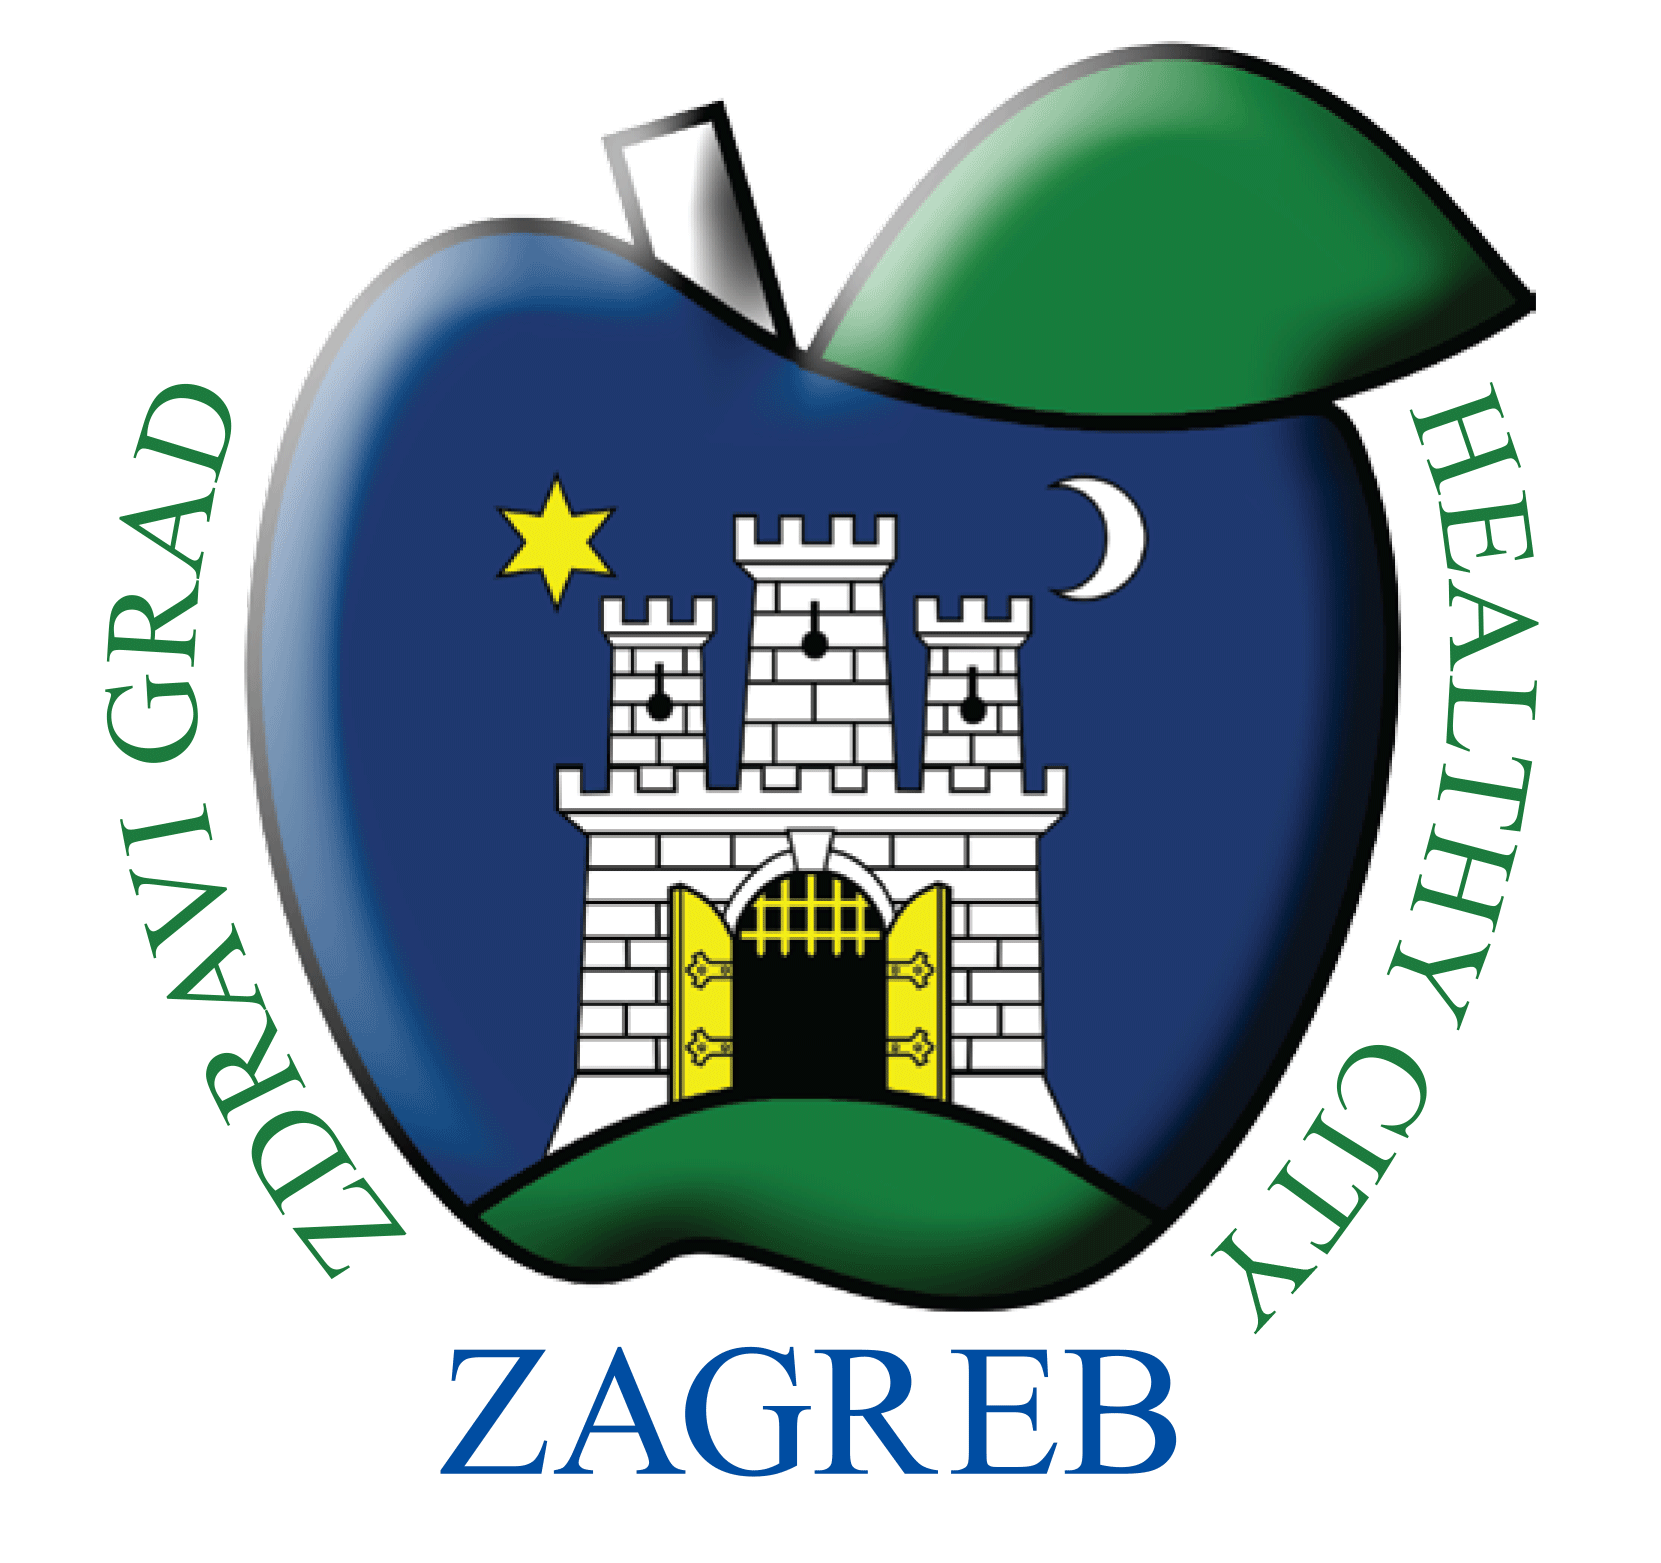 Čuvari srca imaju podršku grada Zagreba i gradonačelnika Milana Bandića